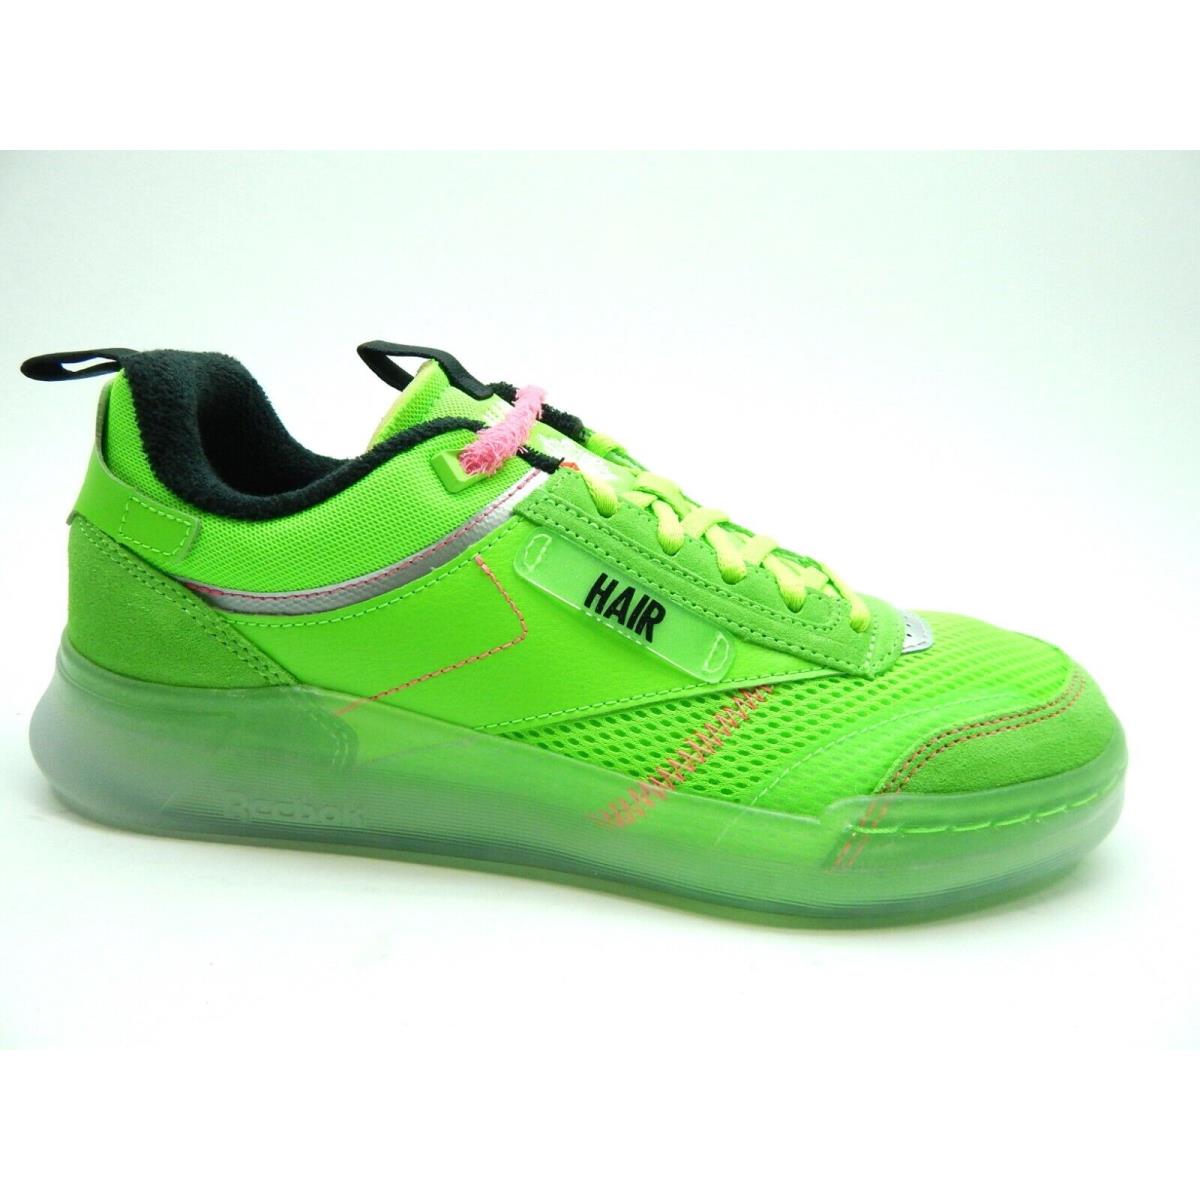 Reebok Club C Legacy Green Black GY5329 Men Shoes Size 8.5